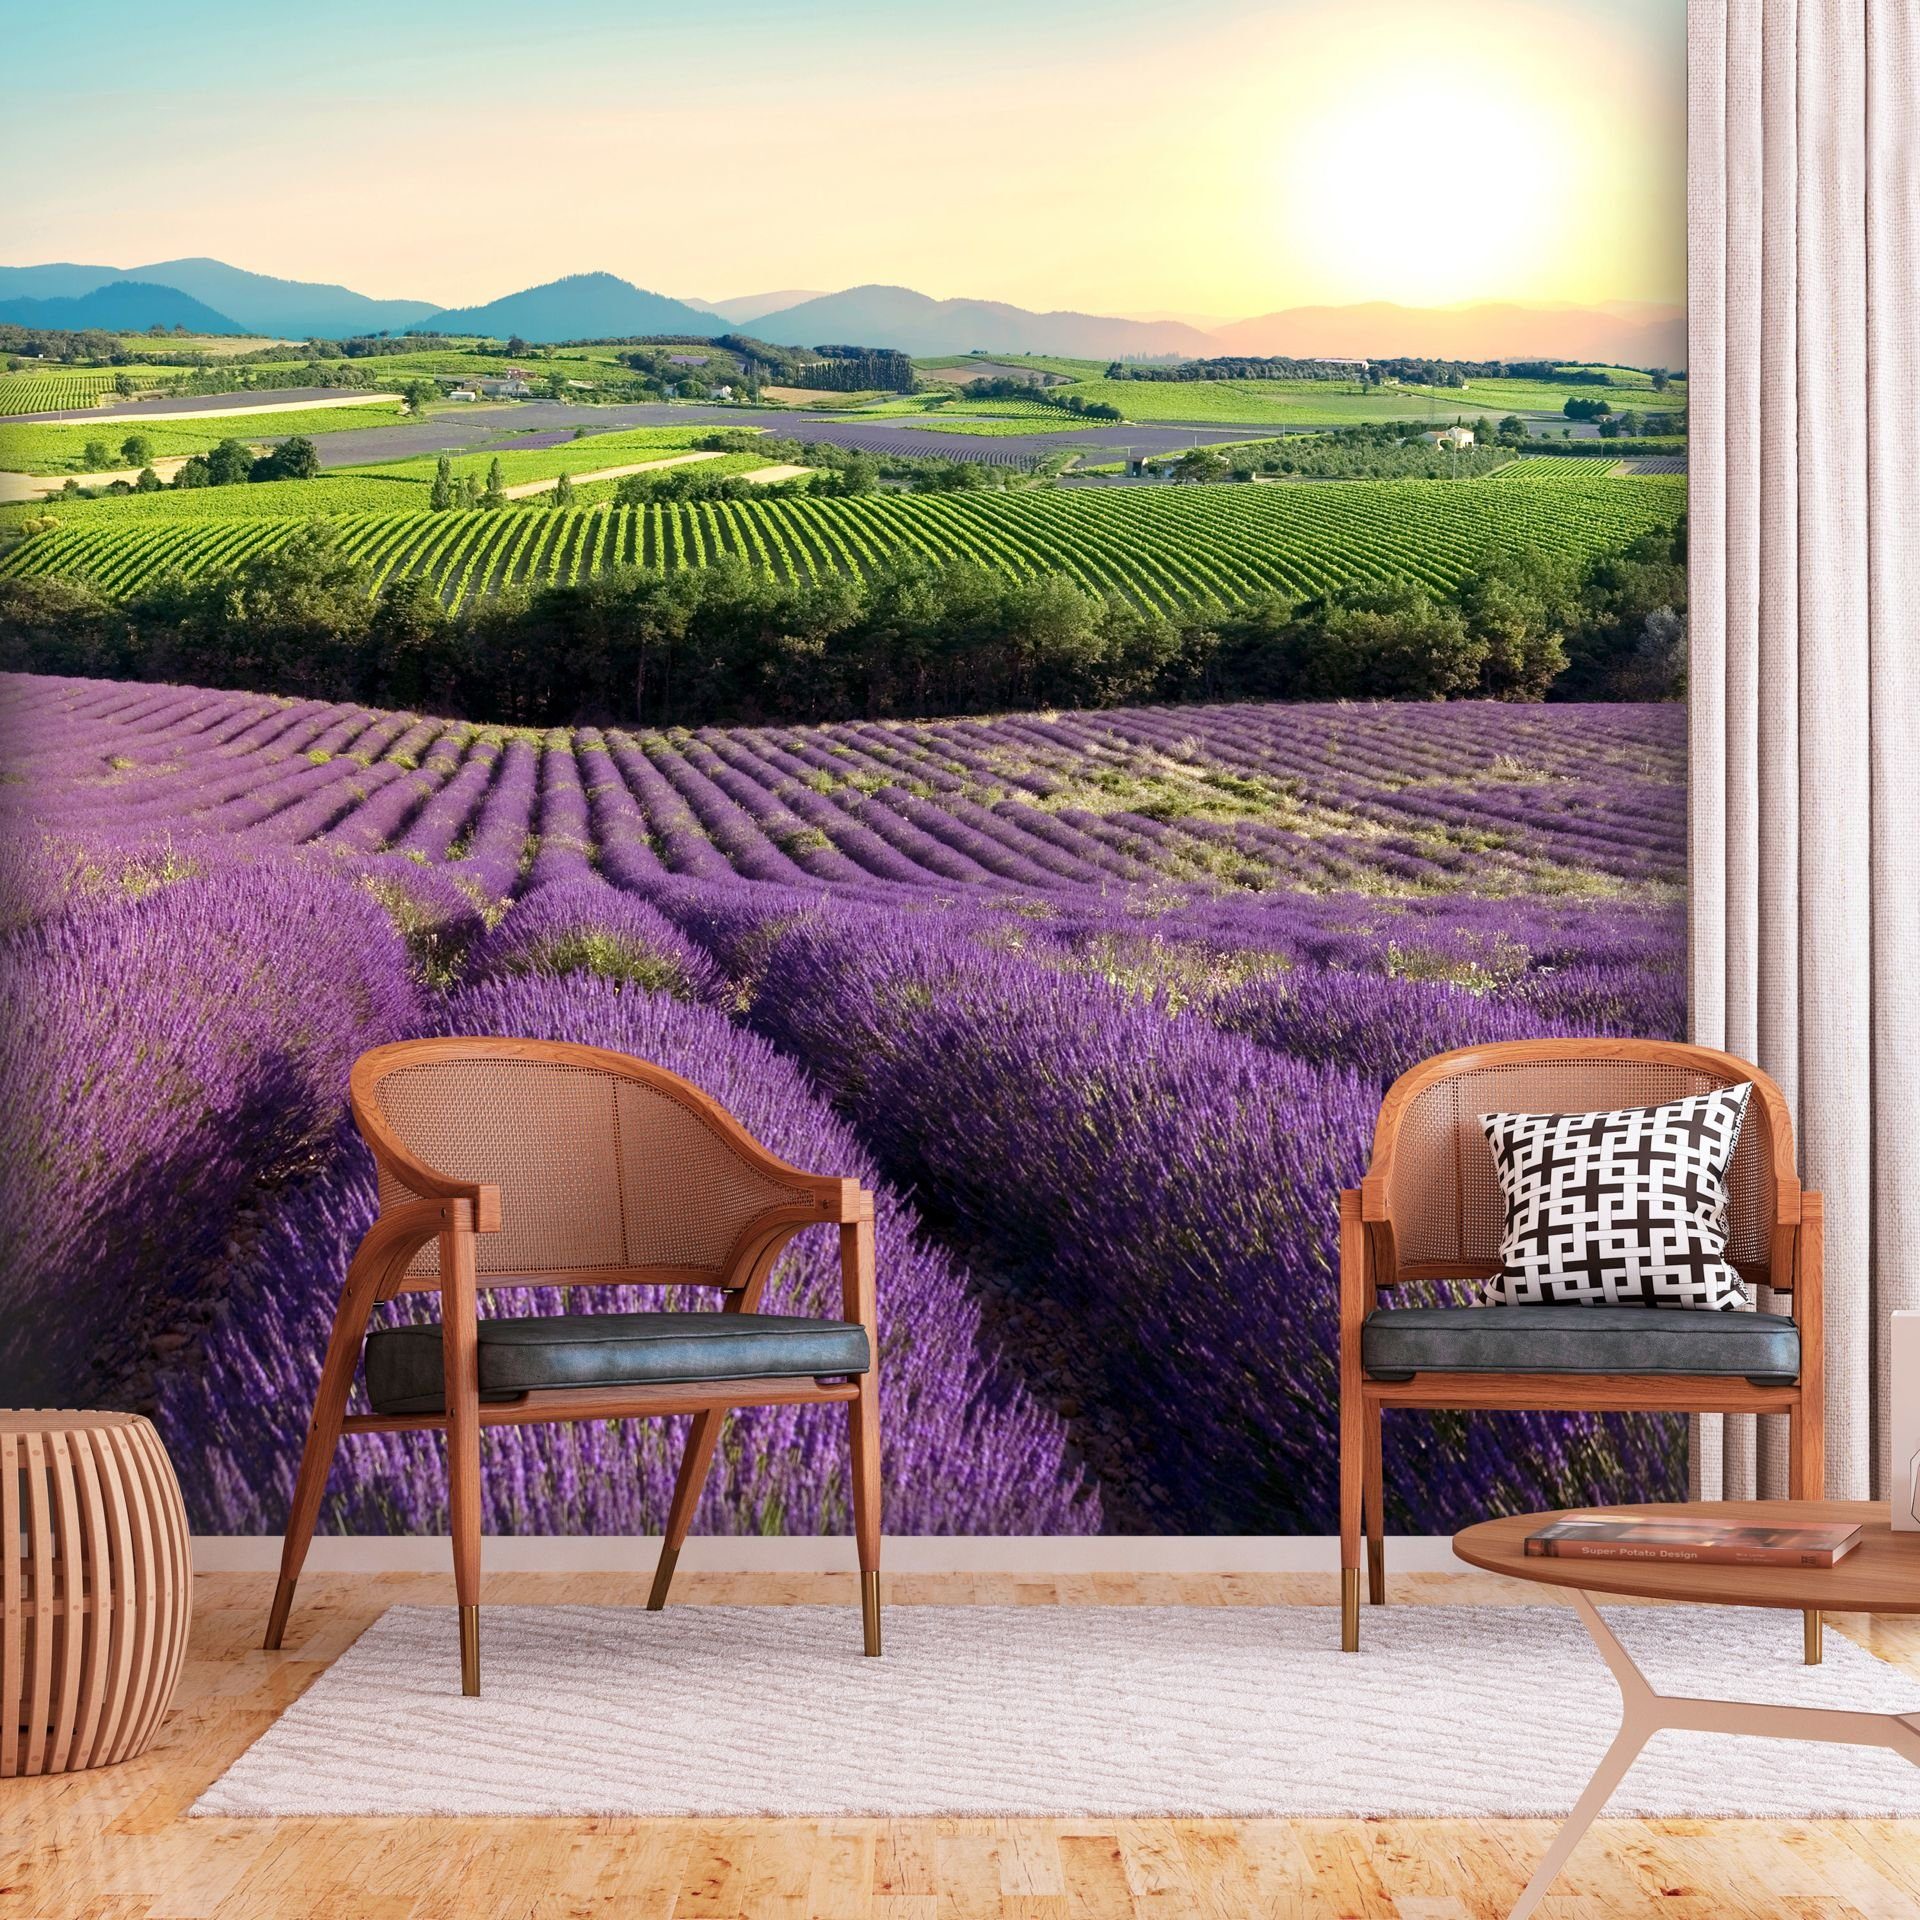 KUNSTLOFT Vliestapete Lavender Field 0.98x0.7 m, halb-matt, matt, lichtbeständige Design Tapete